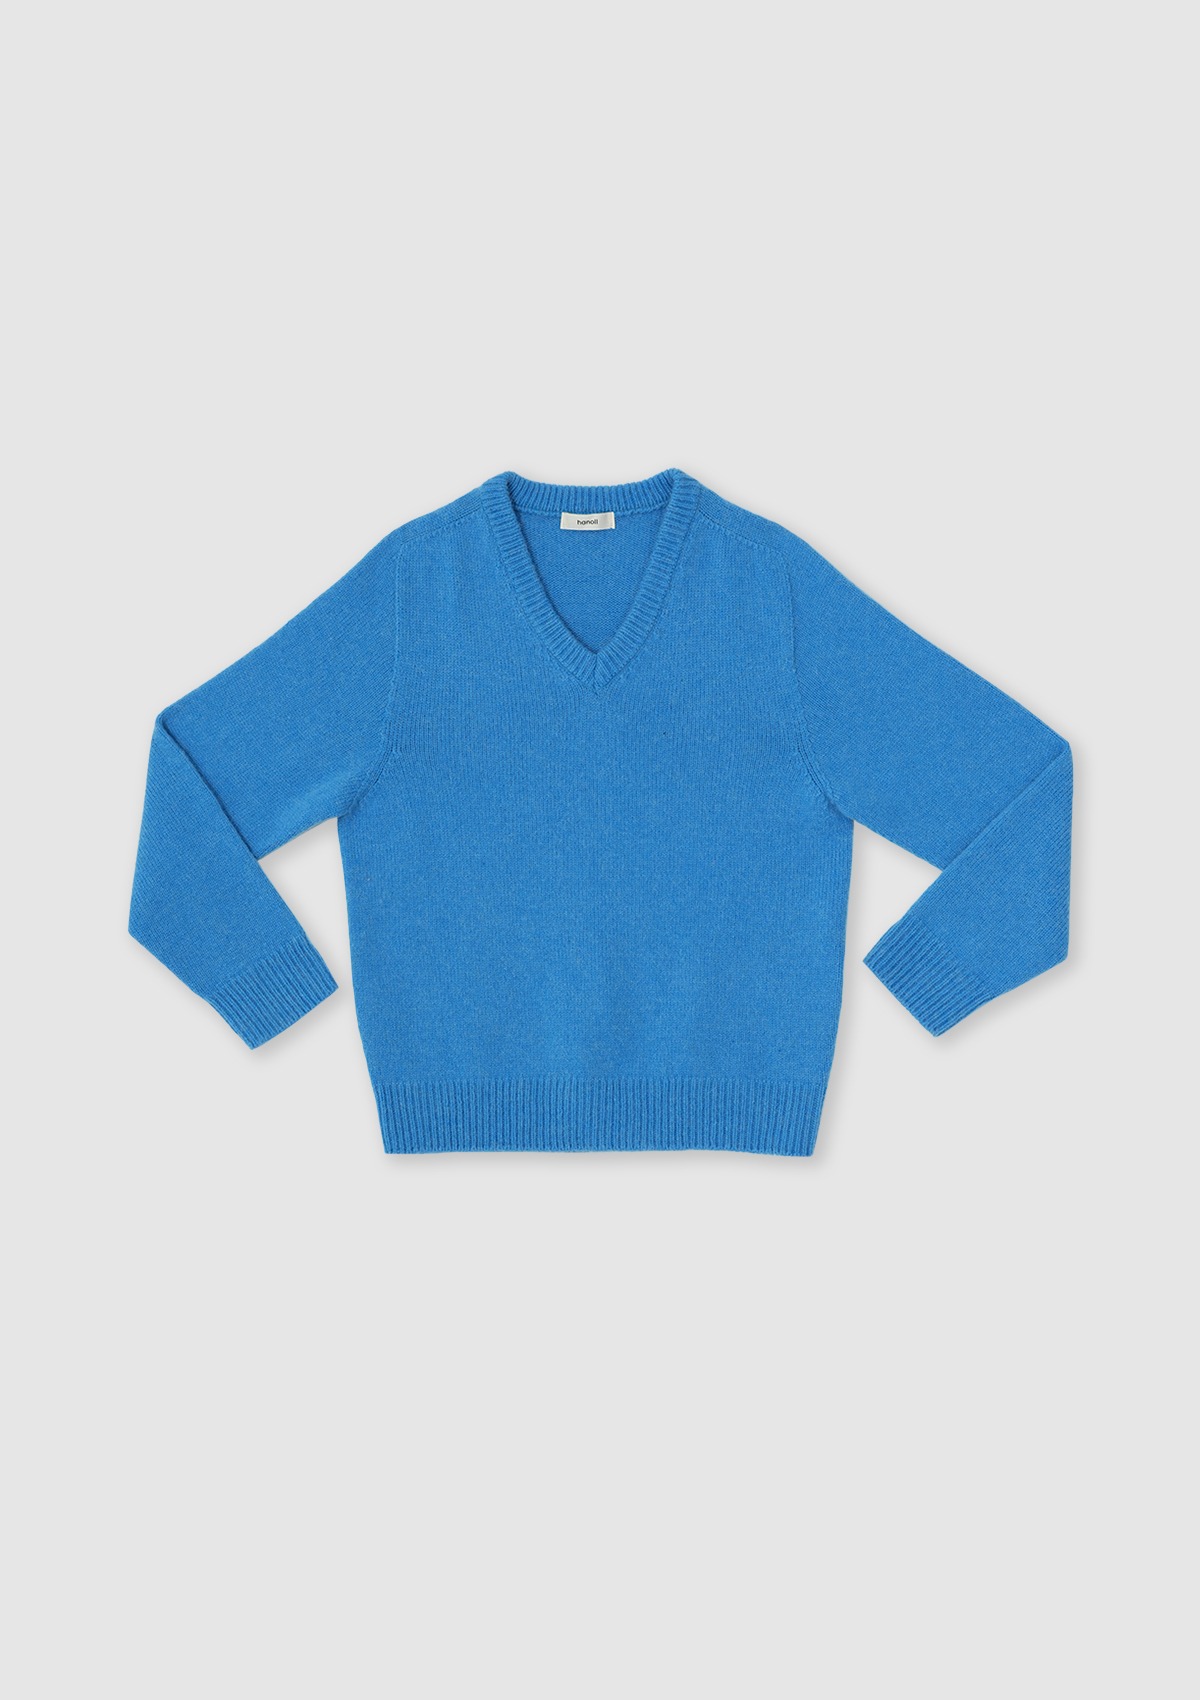 Leez knit (Blue)